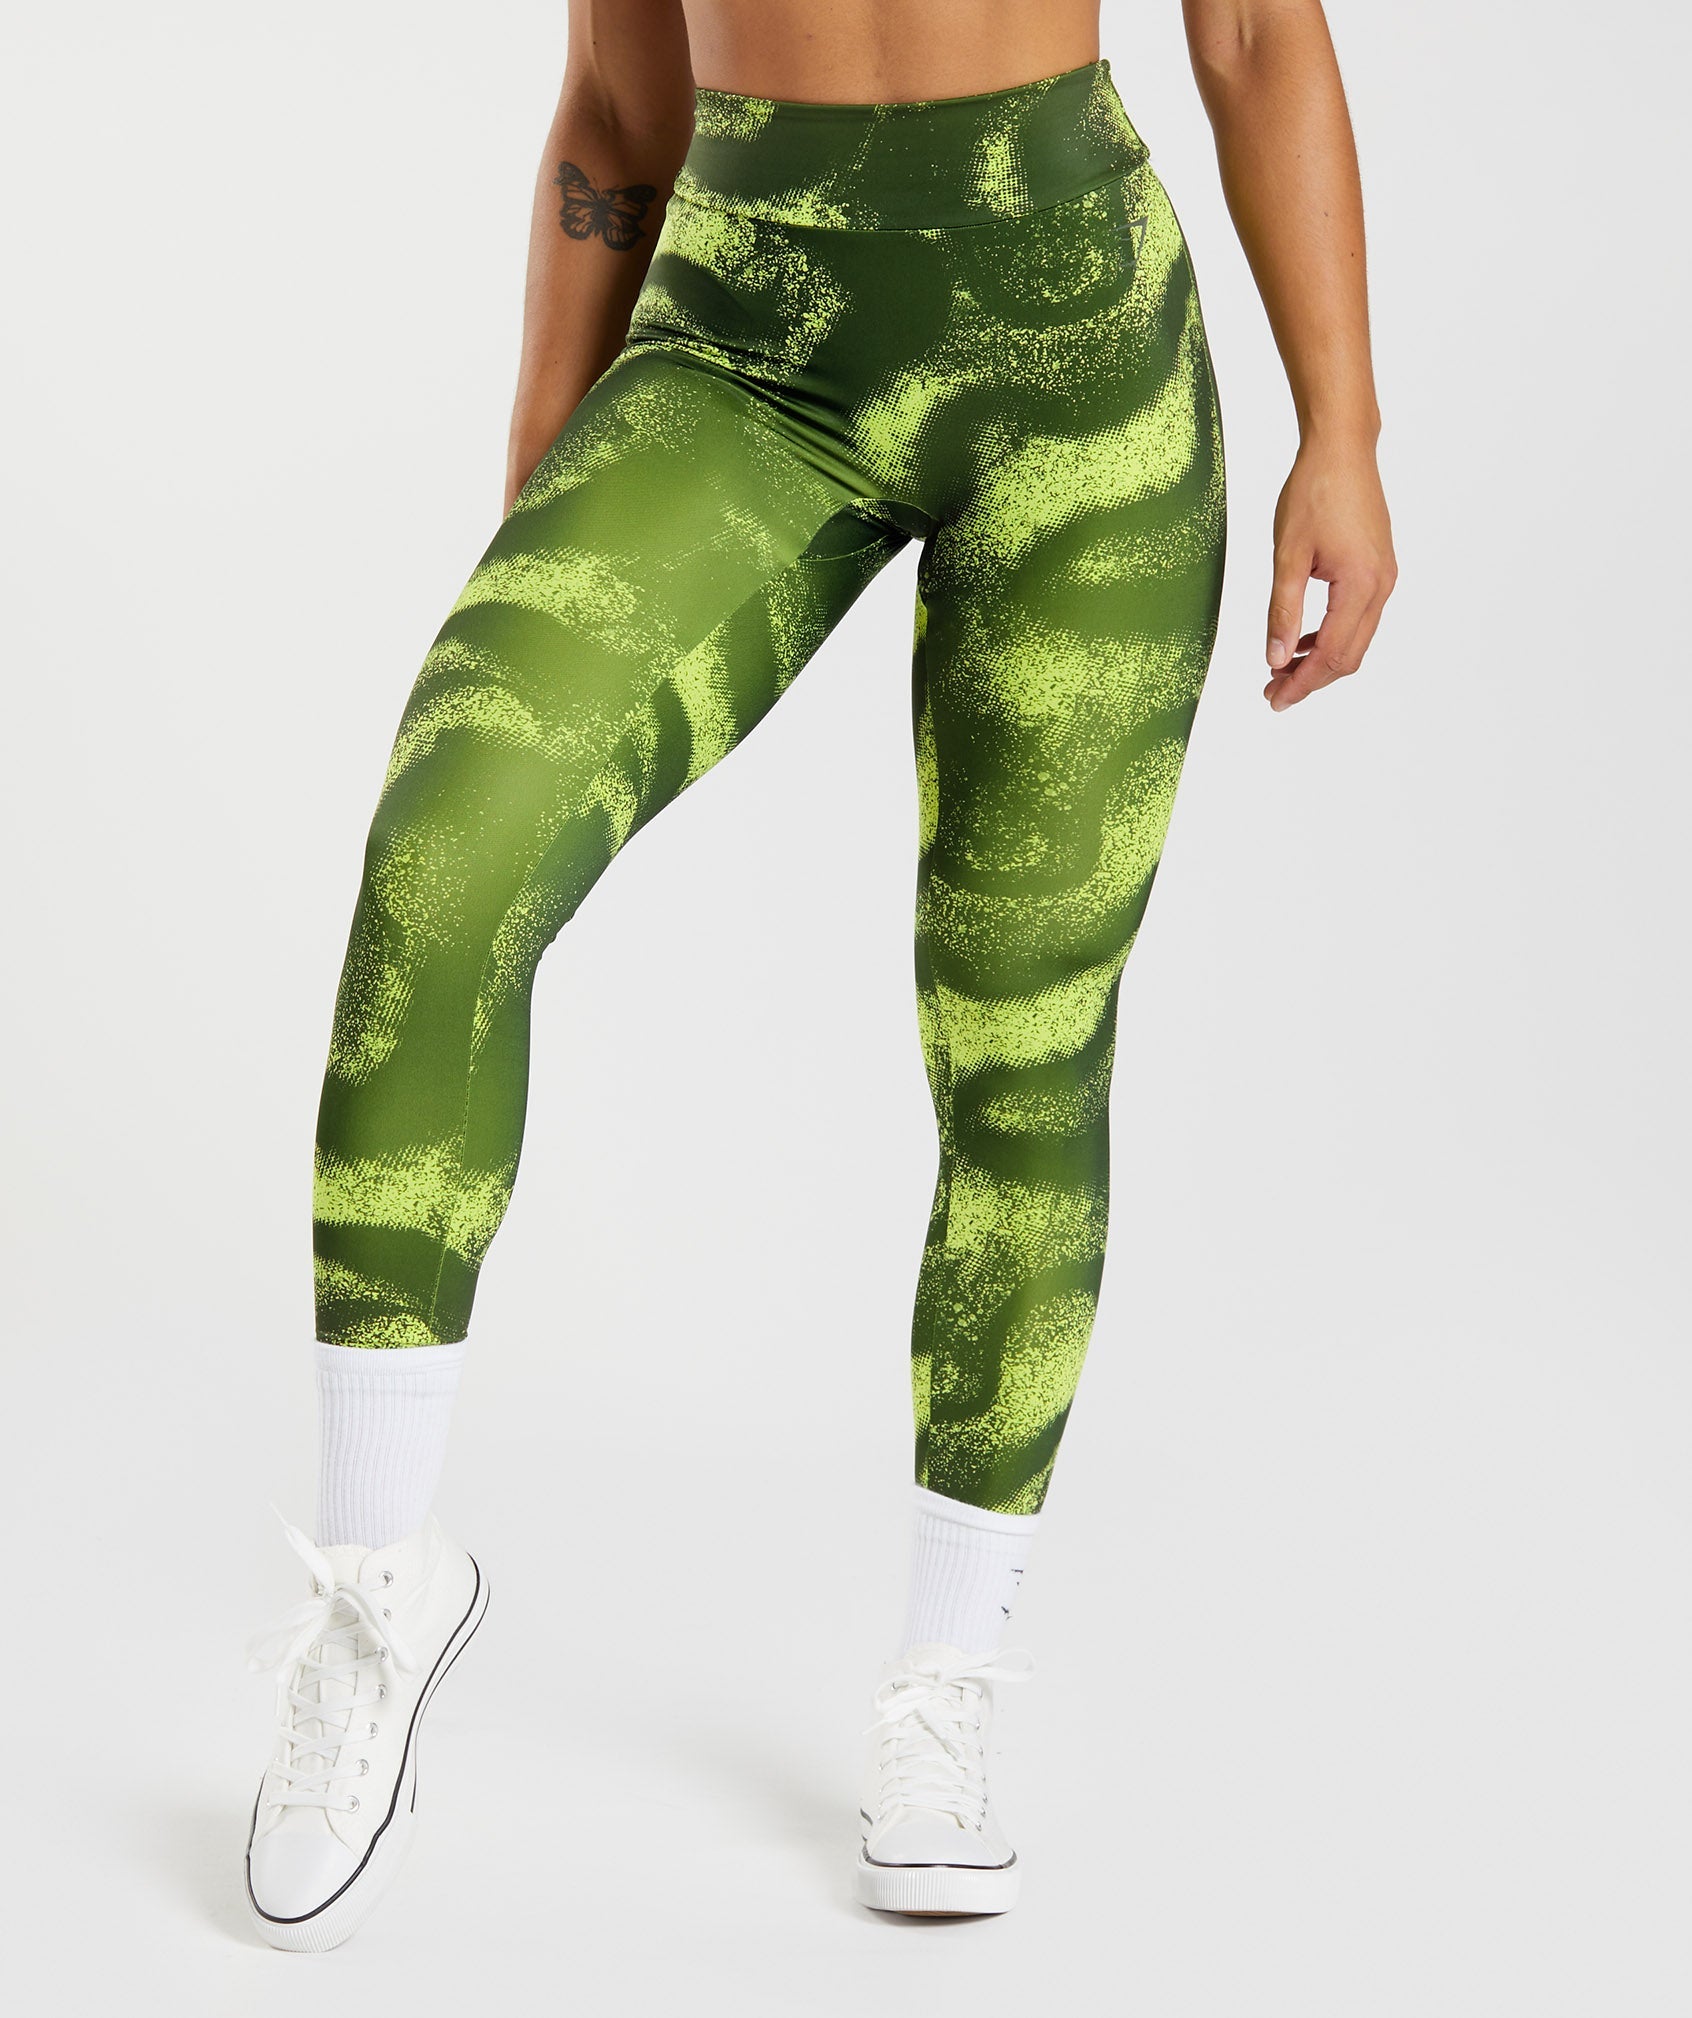 Gymshark Leggings-green Green - $41 - From Taylor